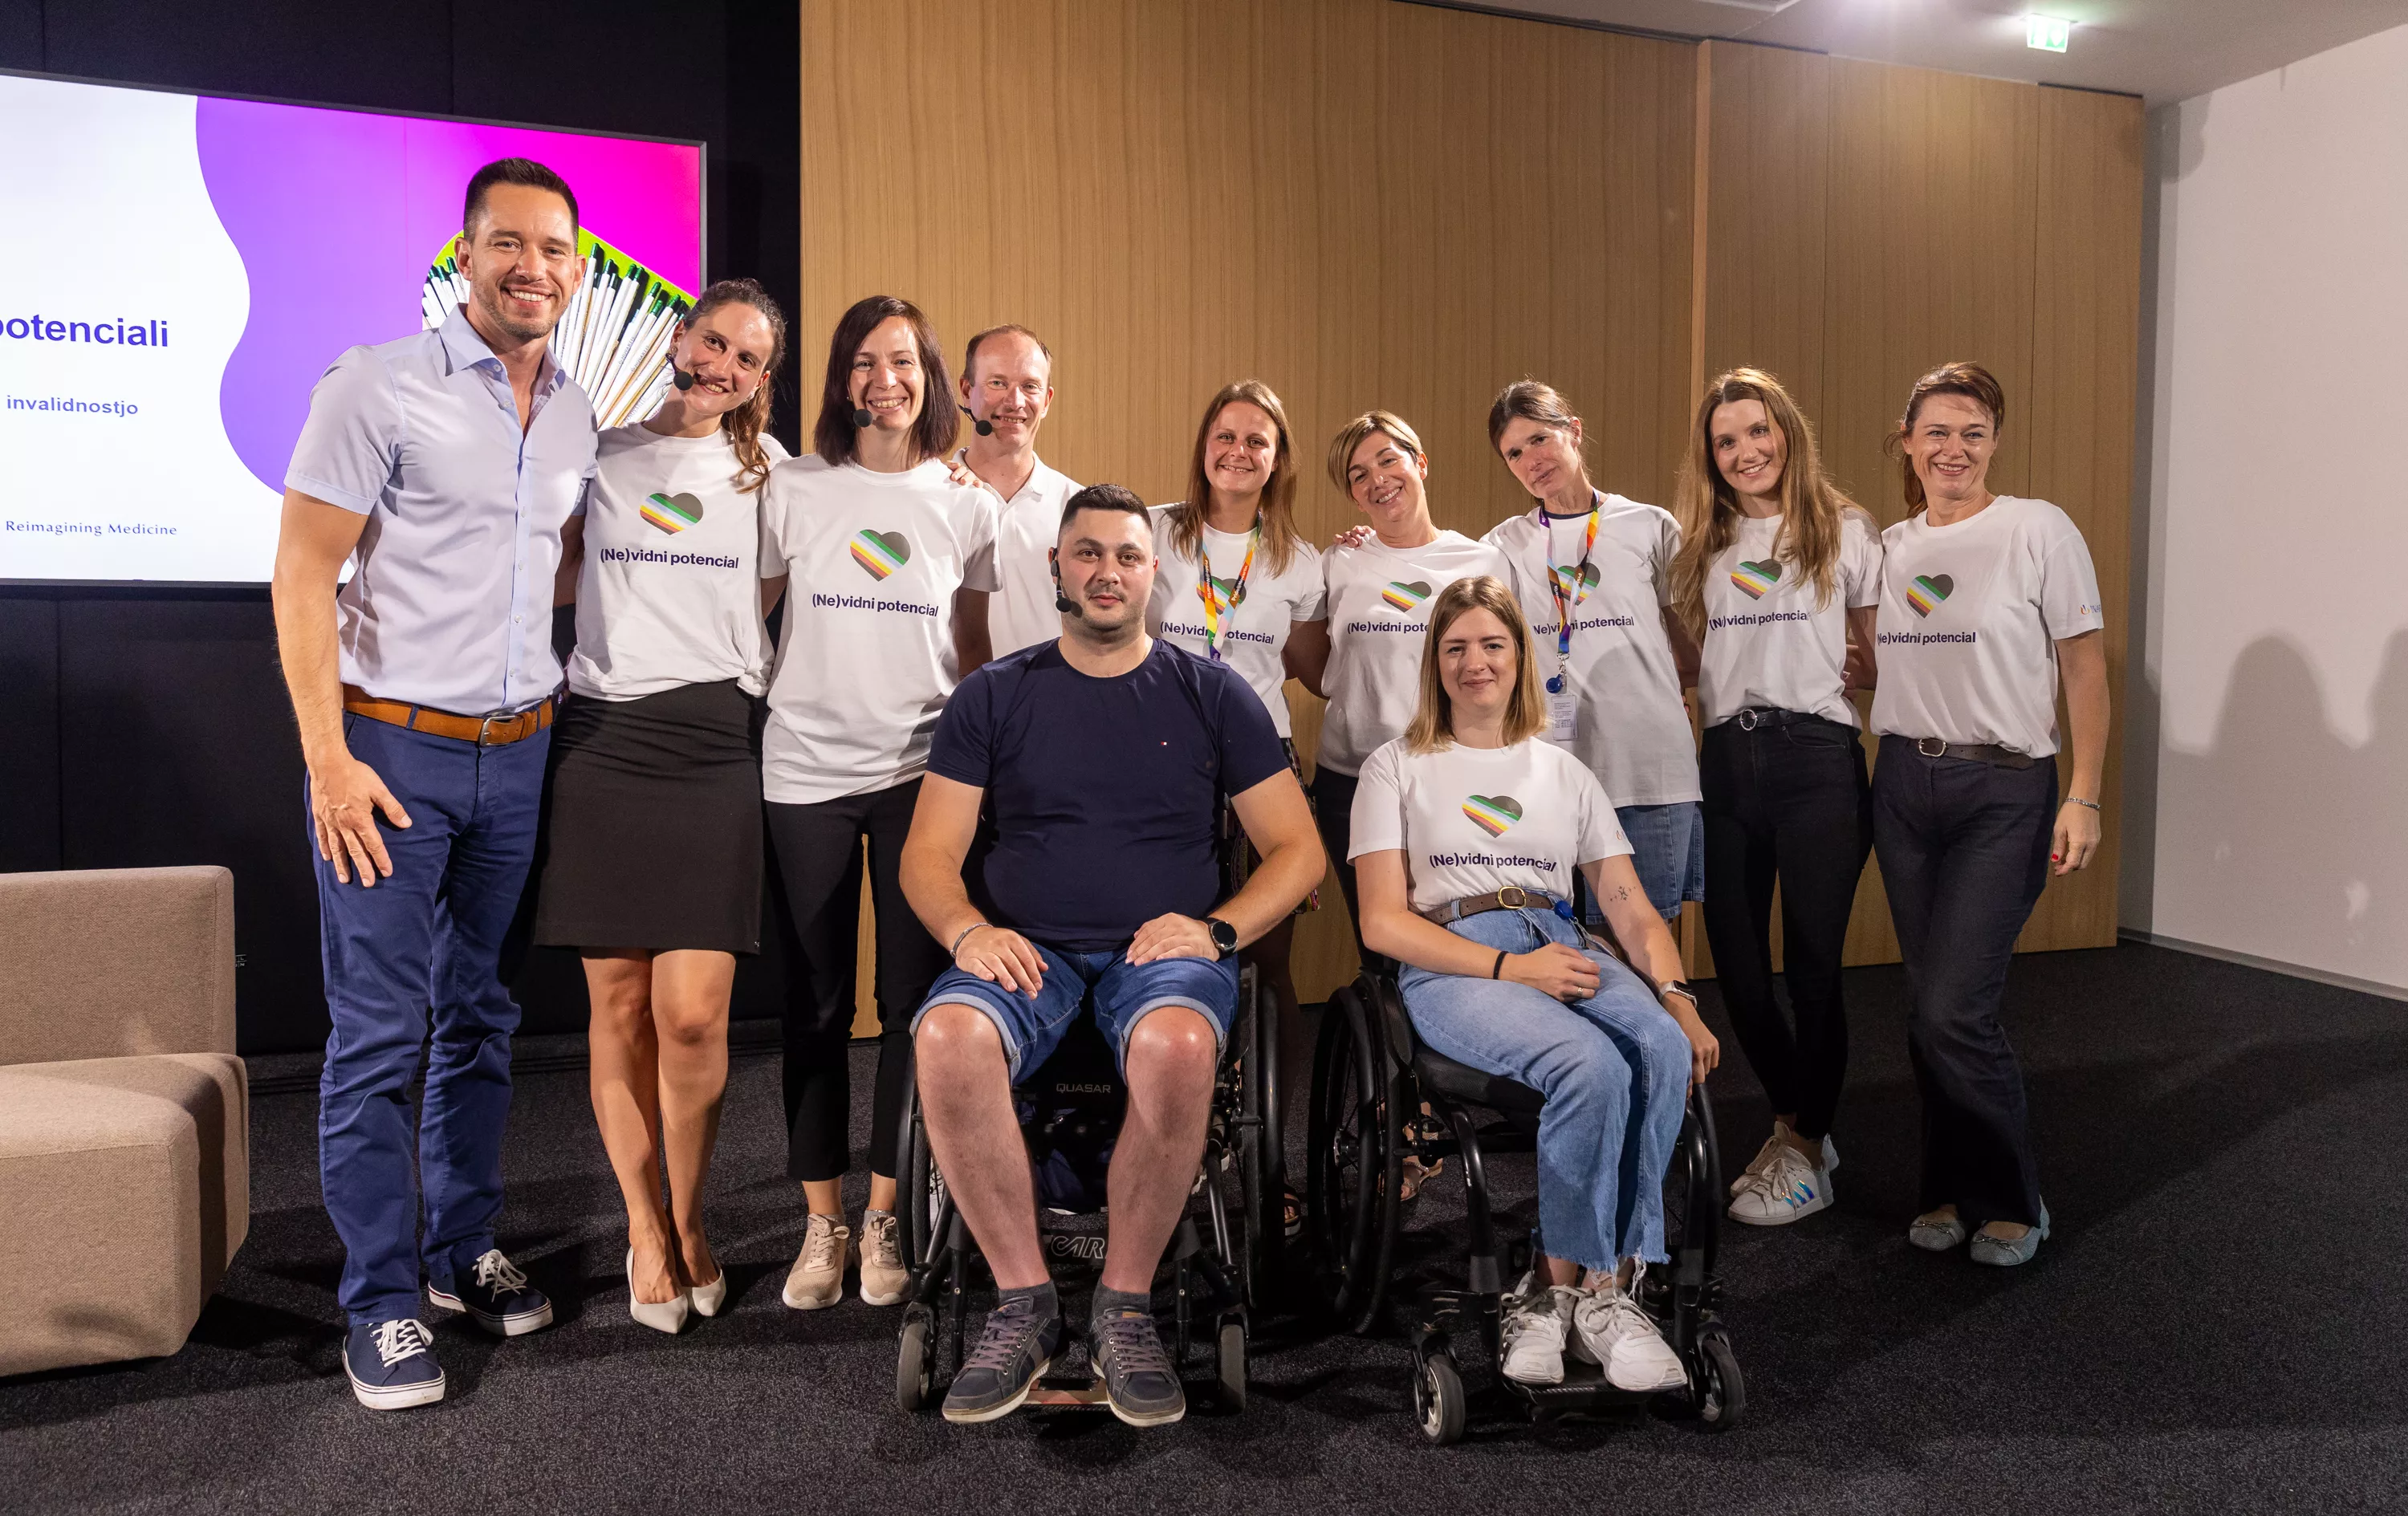 Novartisova interesna skupina sodelavcev za Vključevanje oseb z invalidnostmi z udelezenci okrogle mize